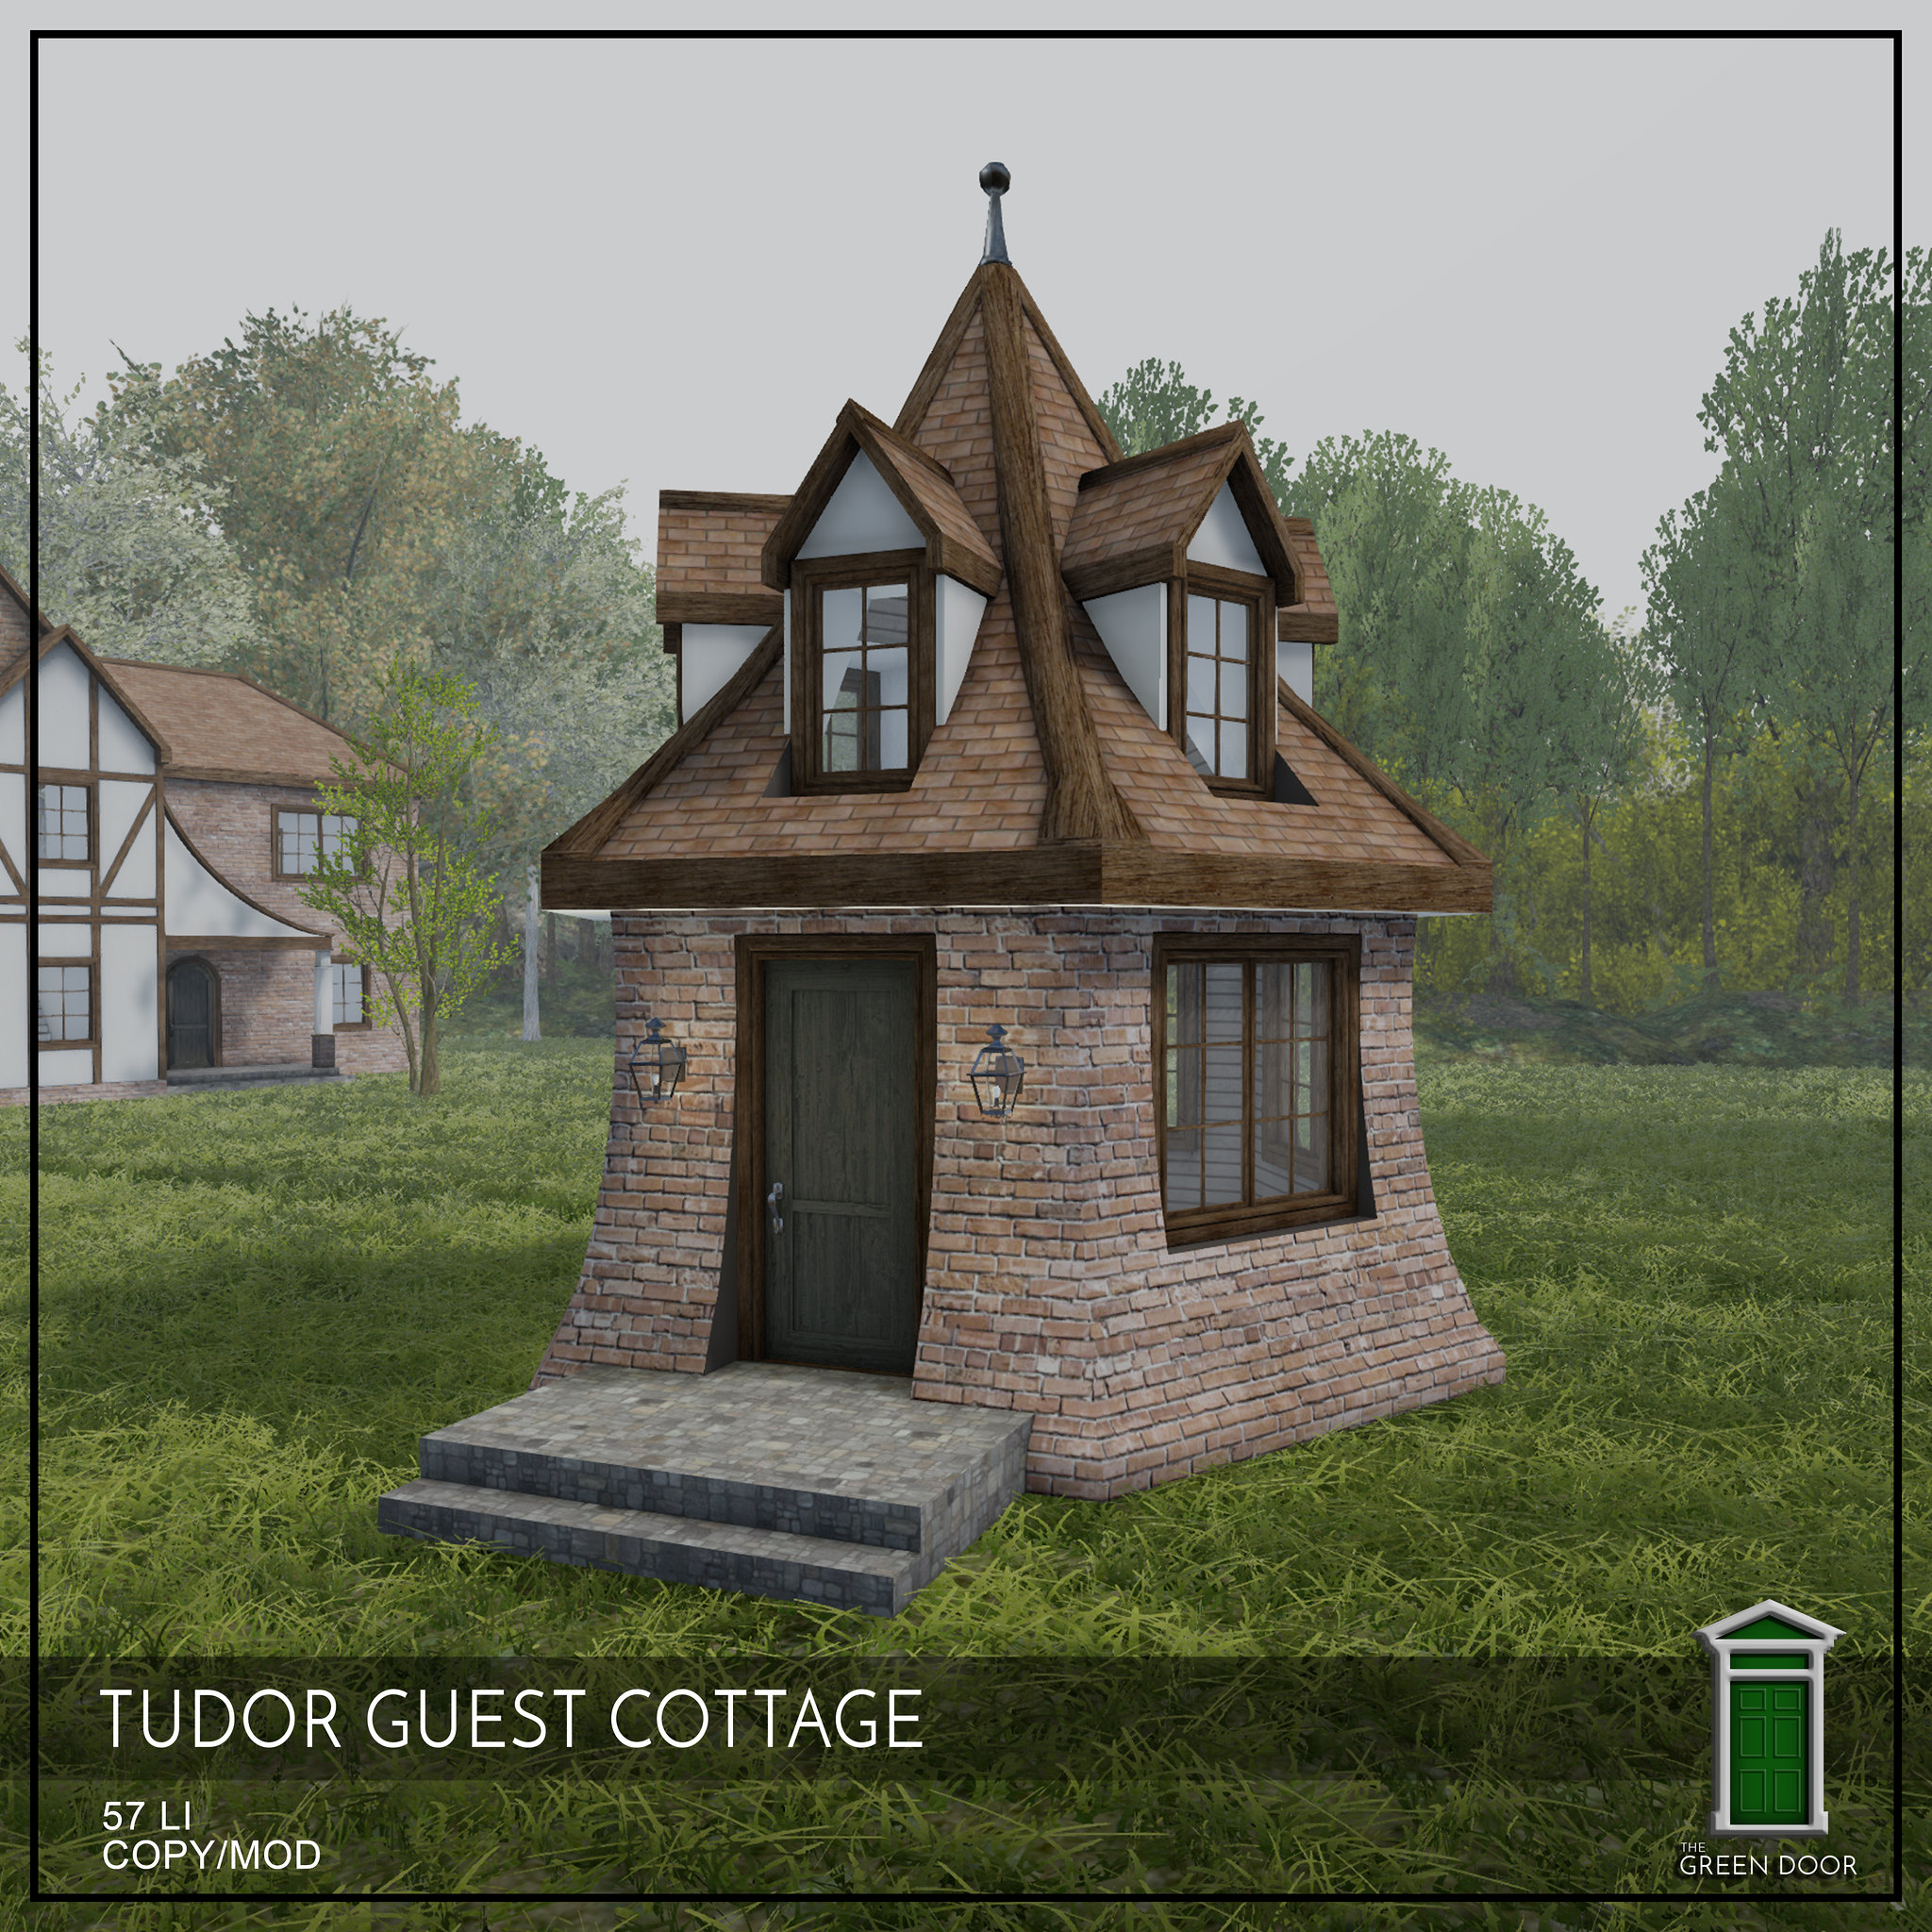 The Green Door – Tudor Guest Cottage